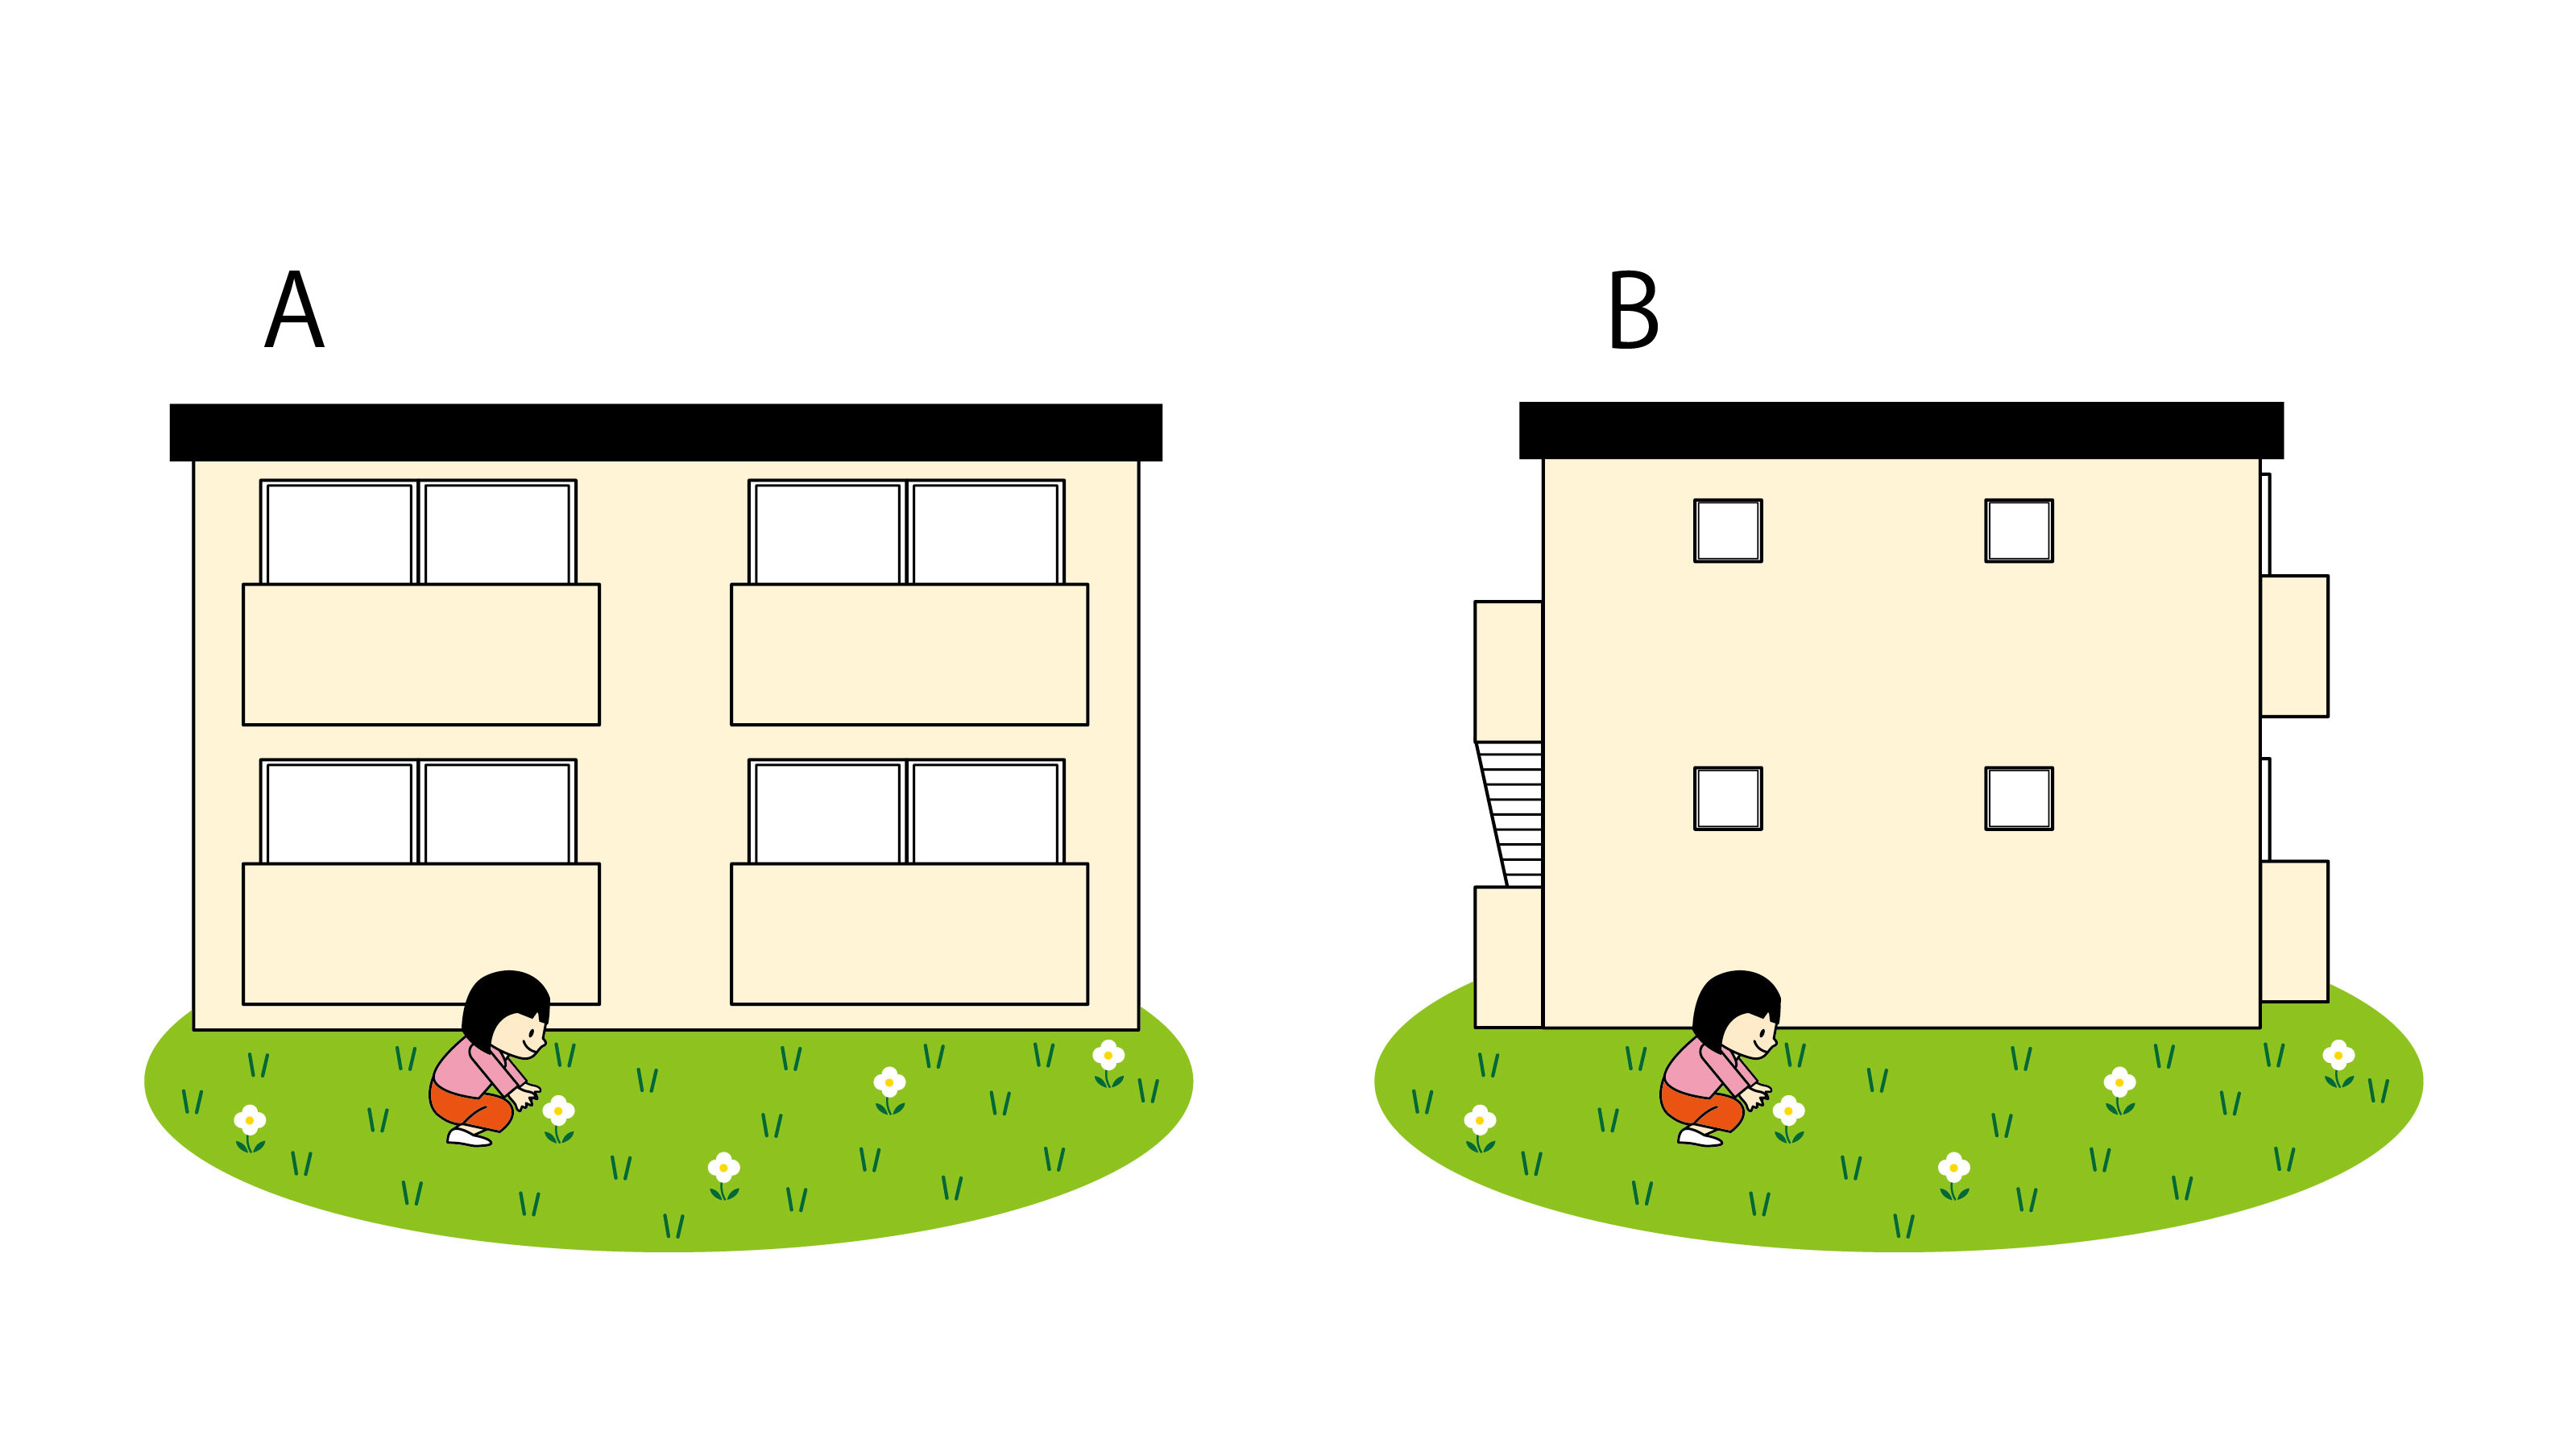 公園では、周りにフェンスがあるか、周囲の家の窓はどちらをむいているかなどを確認する。上のイラストの場合、どちらの公園もアパートの窓がむいているが、Aのほうがより安全。Bの窓は小さすぎて、あまり監視性が高いとはいえないからだ（イラスト／三井俊之）

